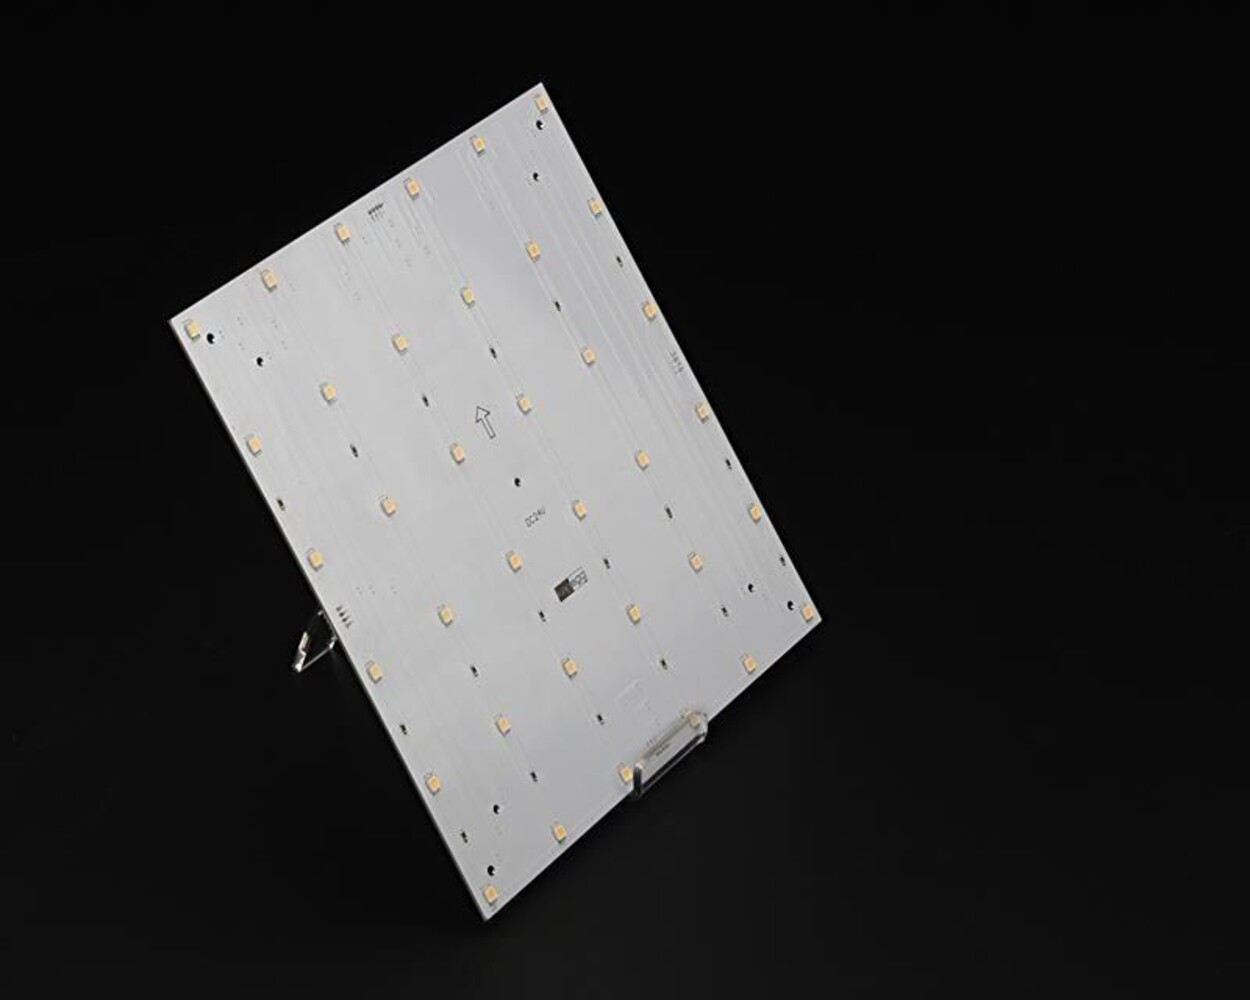 Hochwertiges LED Panel in Kaltweiß von der Marke Deko-Light